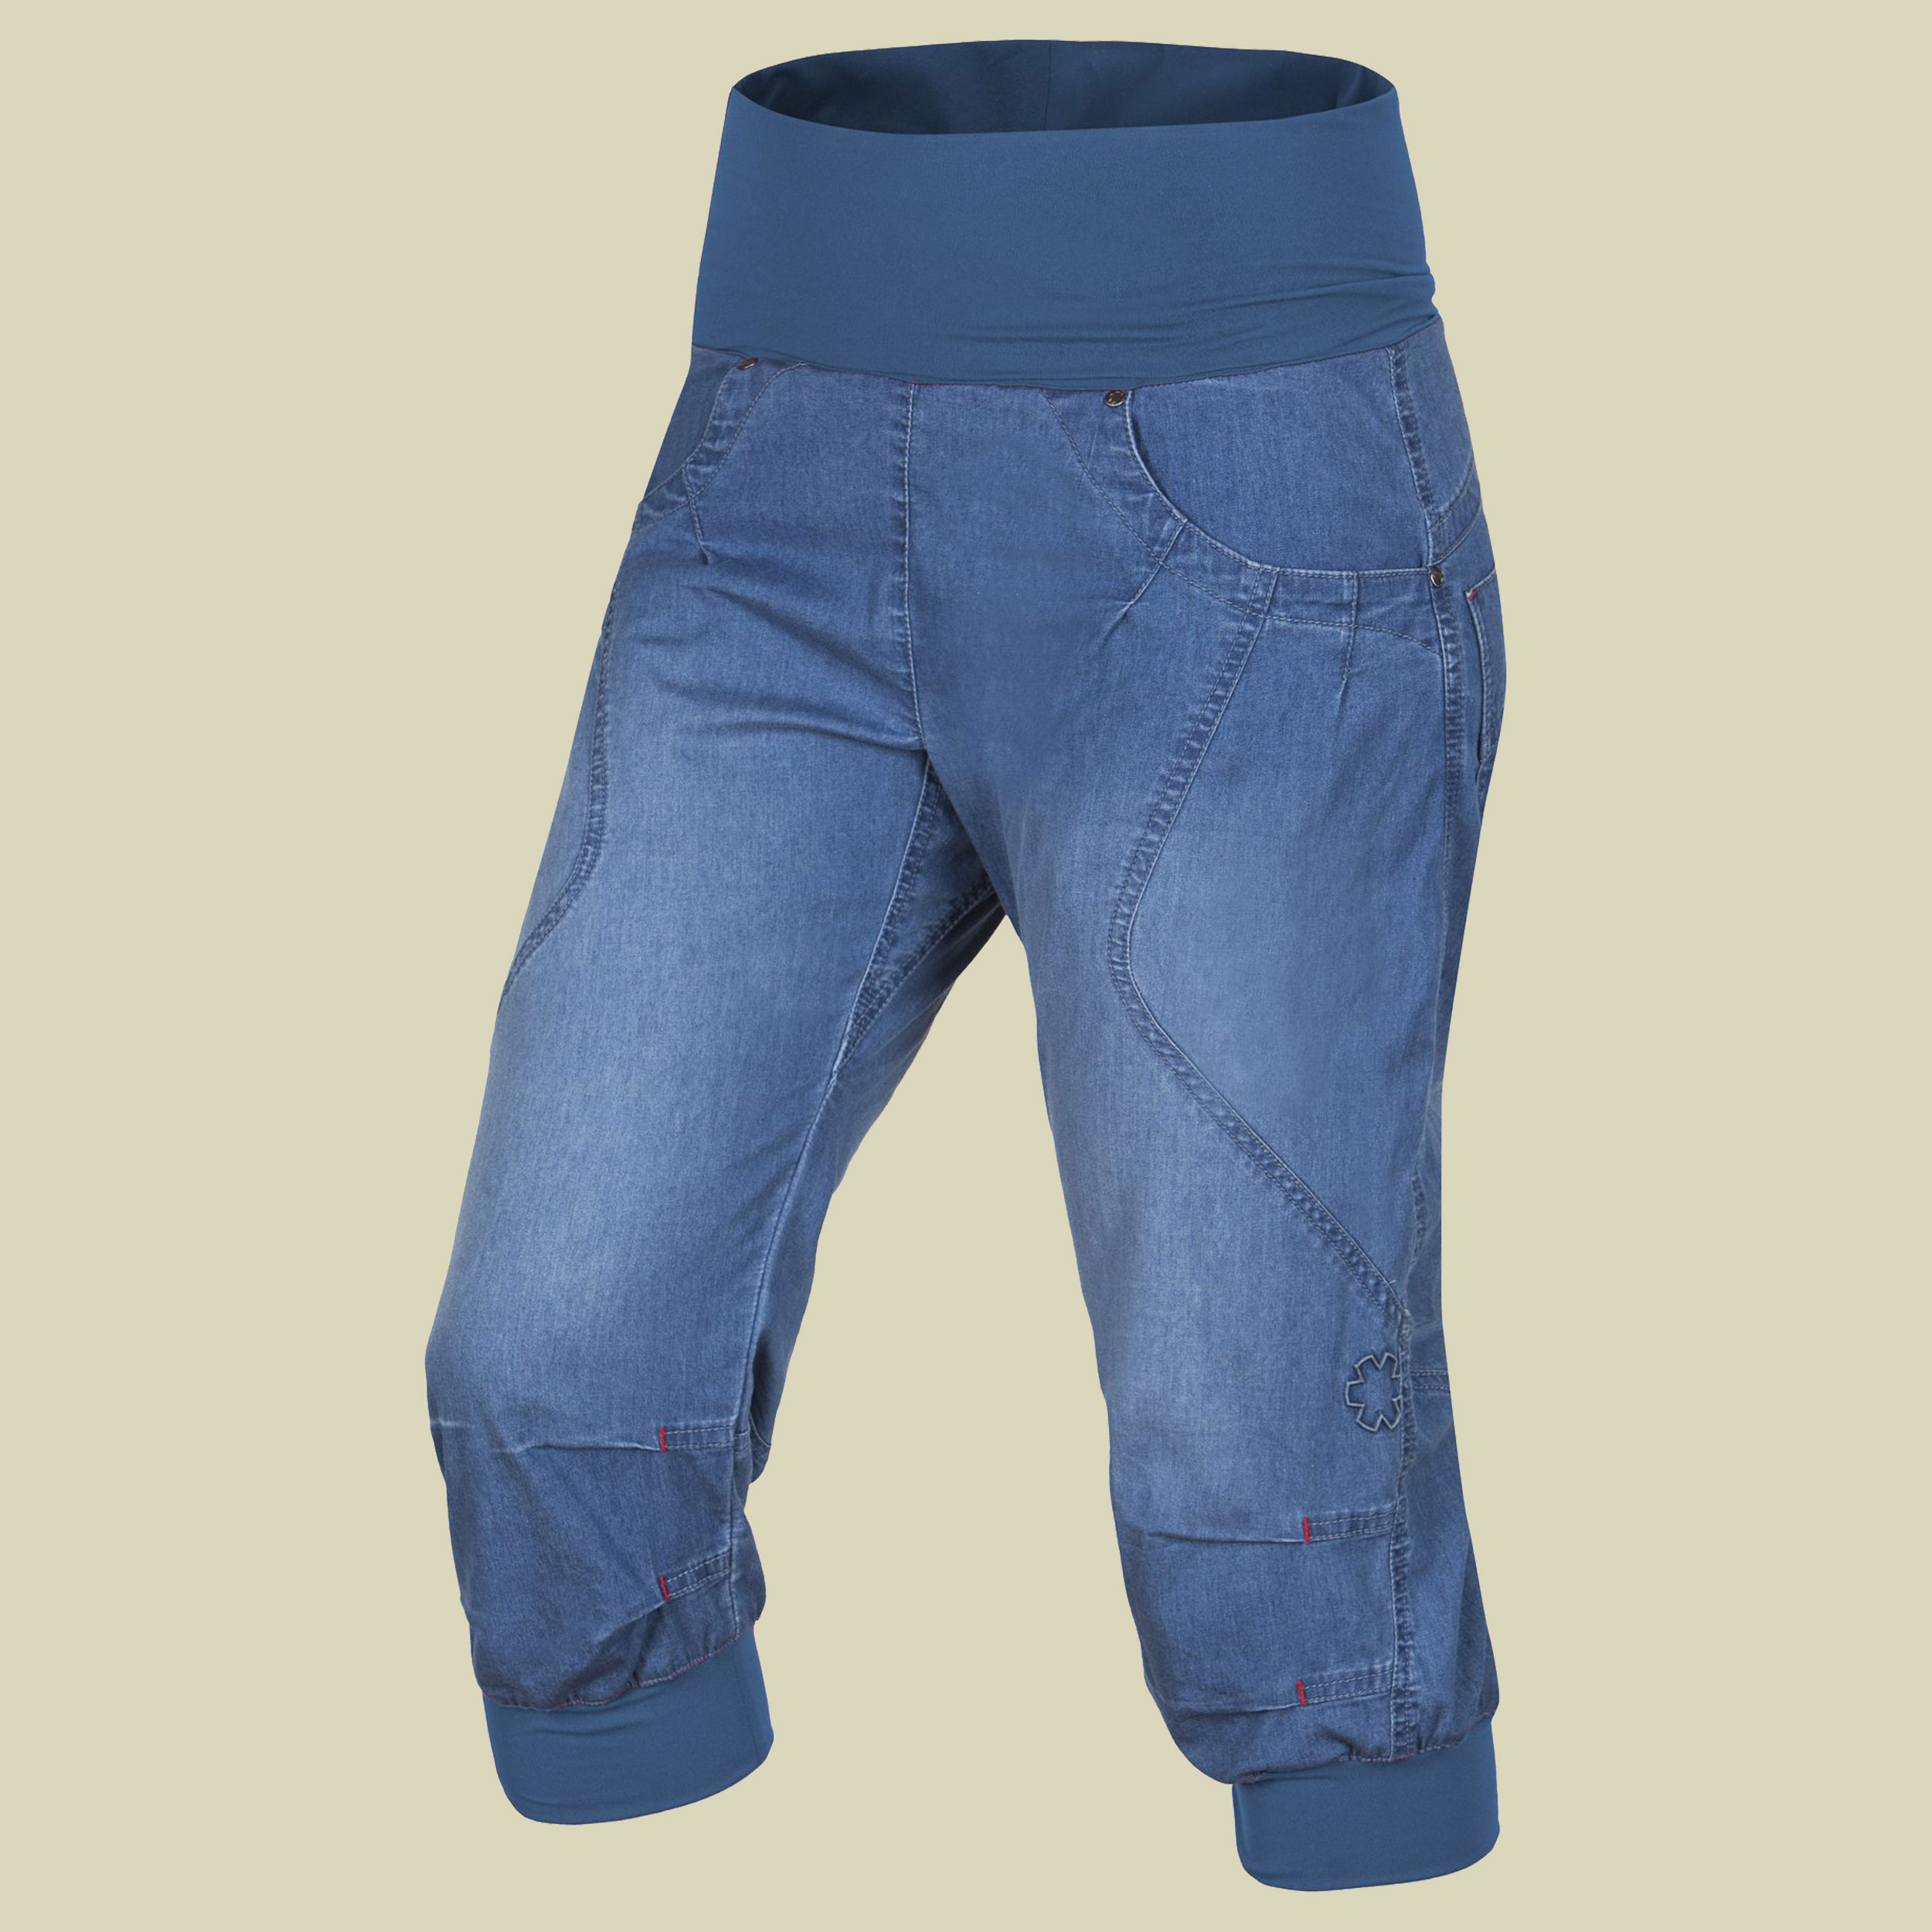 Noya Shorts Jeans Women Größe S Farbe middle blue